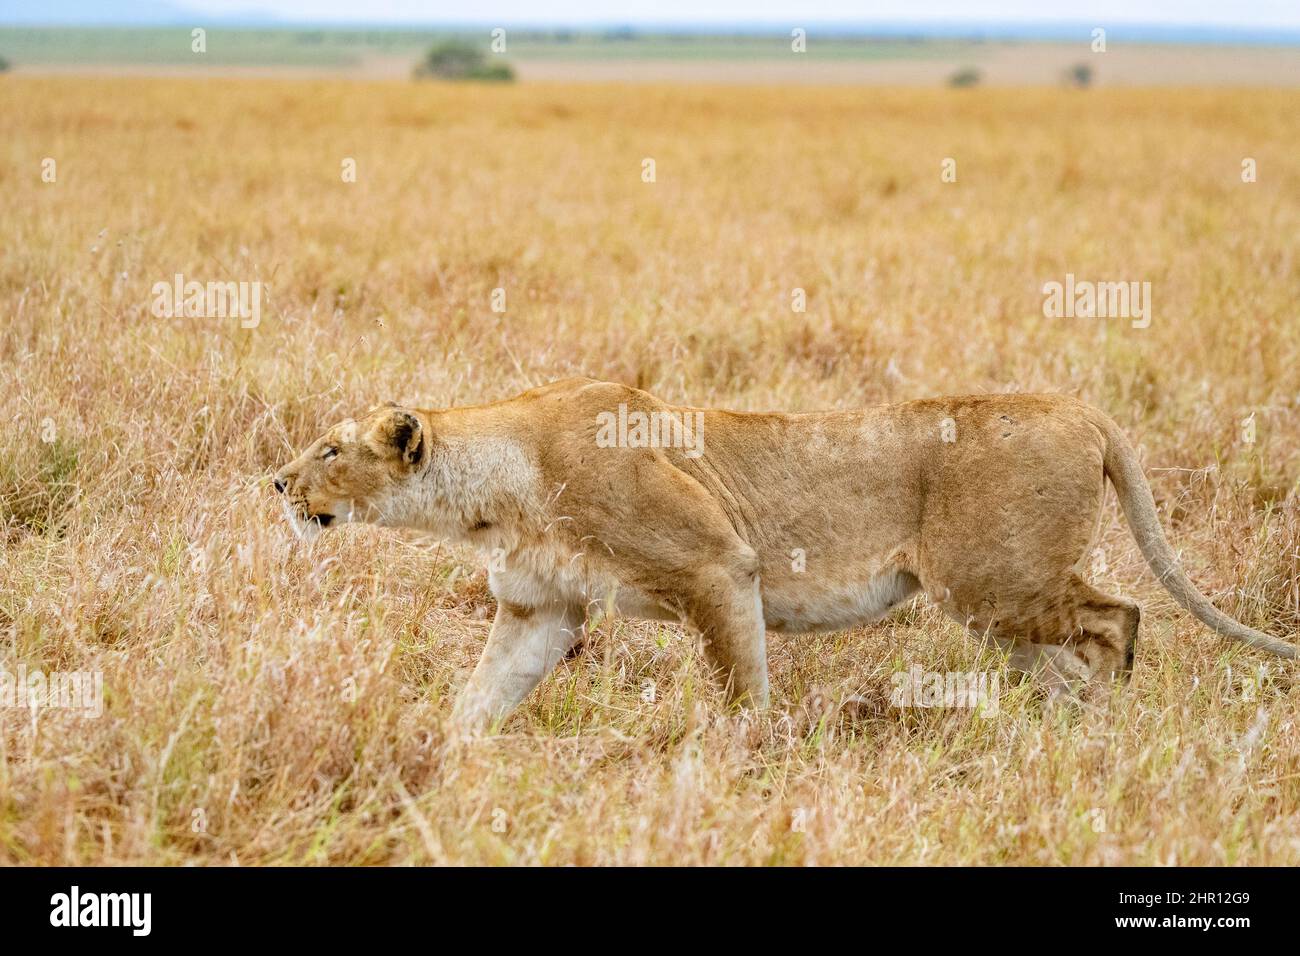 Lion (Panthera leo) lioness walking in savanna, beginning of hunting, stalking, Masai Mara National Reserve, National Park, Kenya Stock Photo